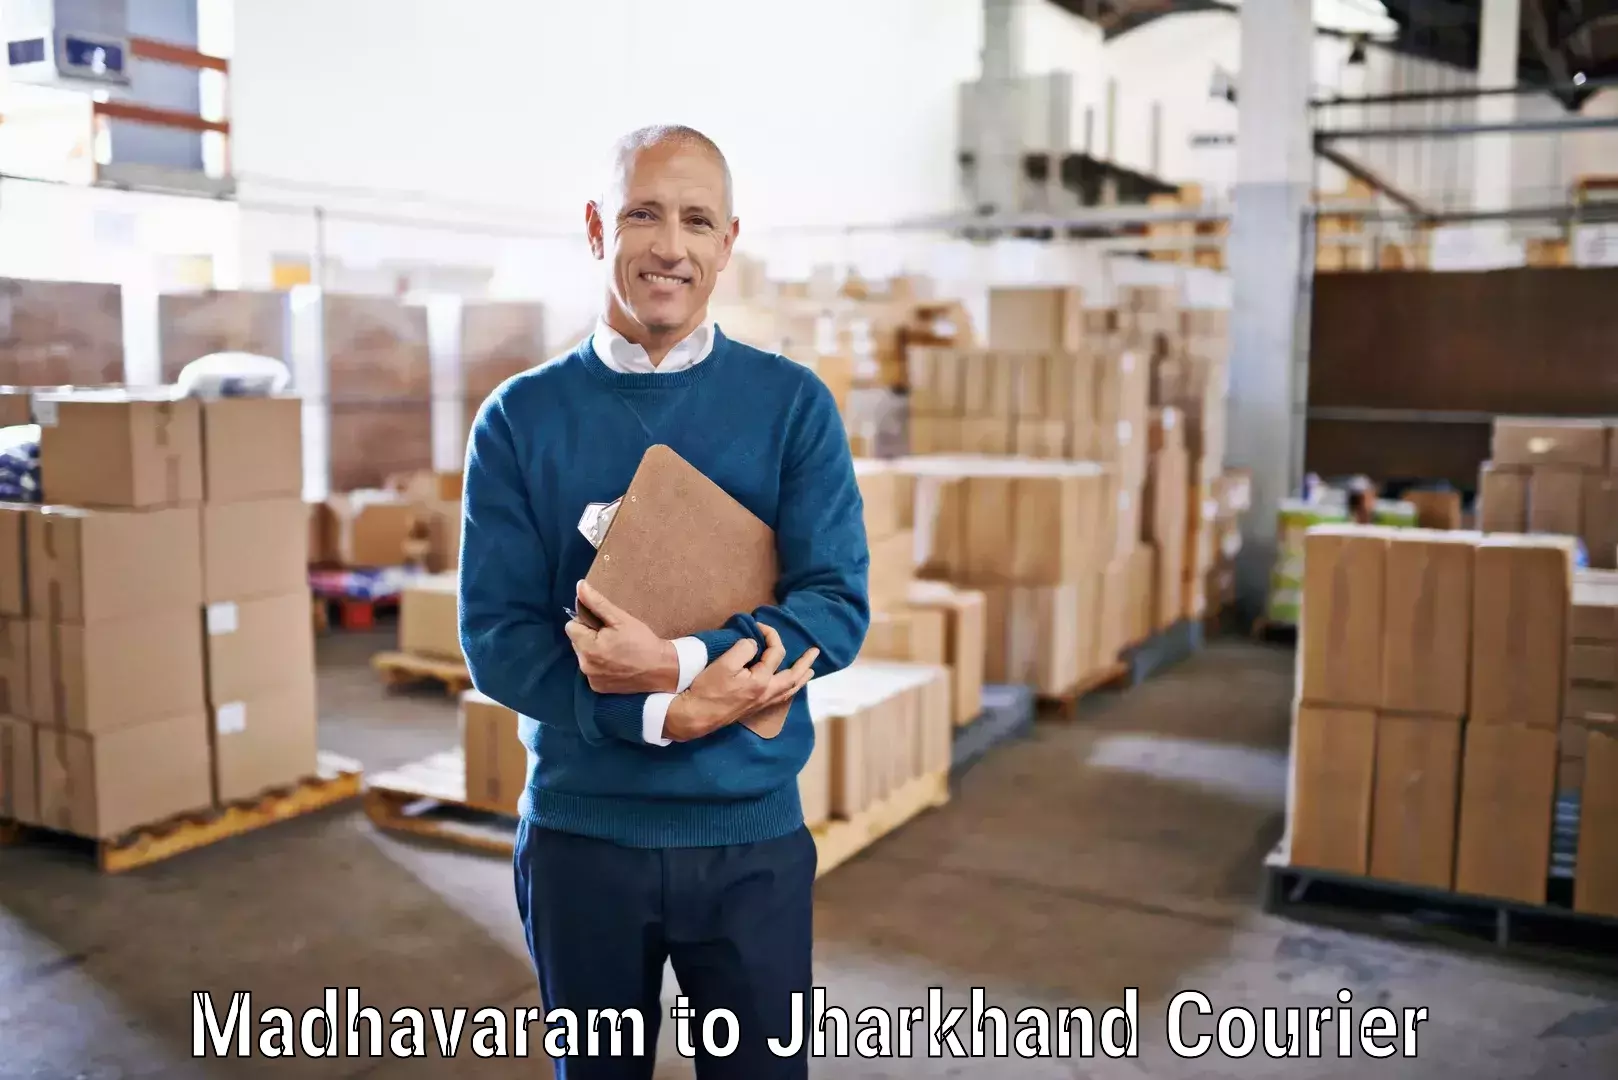 Premium courier solutions Madhavaram to Jamshedpur